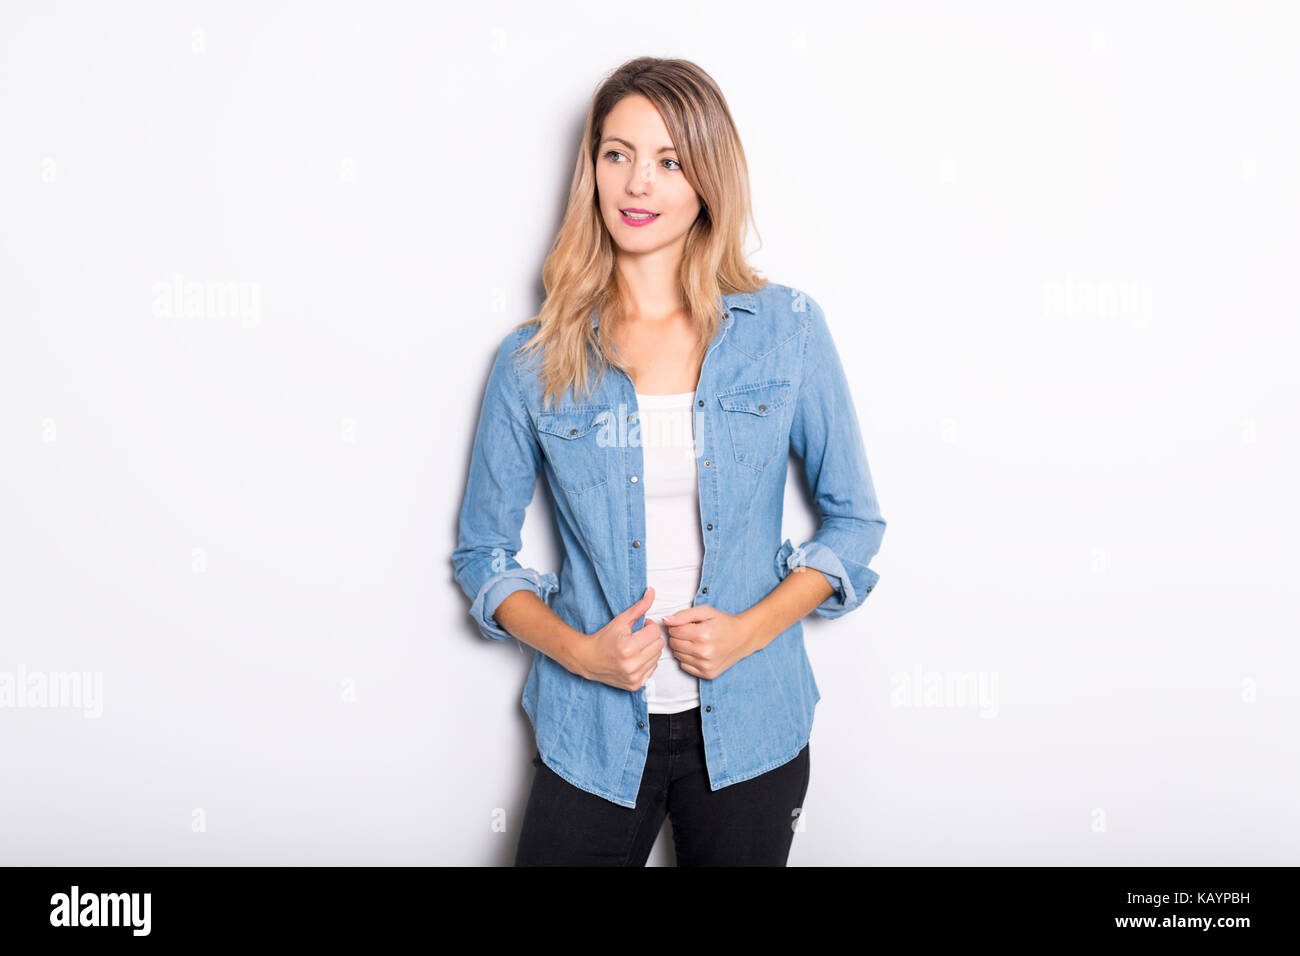 Junge Frau in Jeans Hemd und Jeans, lehnte sich gegen graue Wand Hintergrund Stockfoto